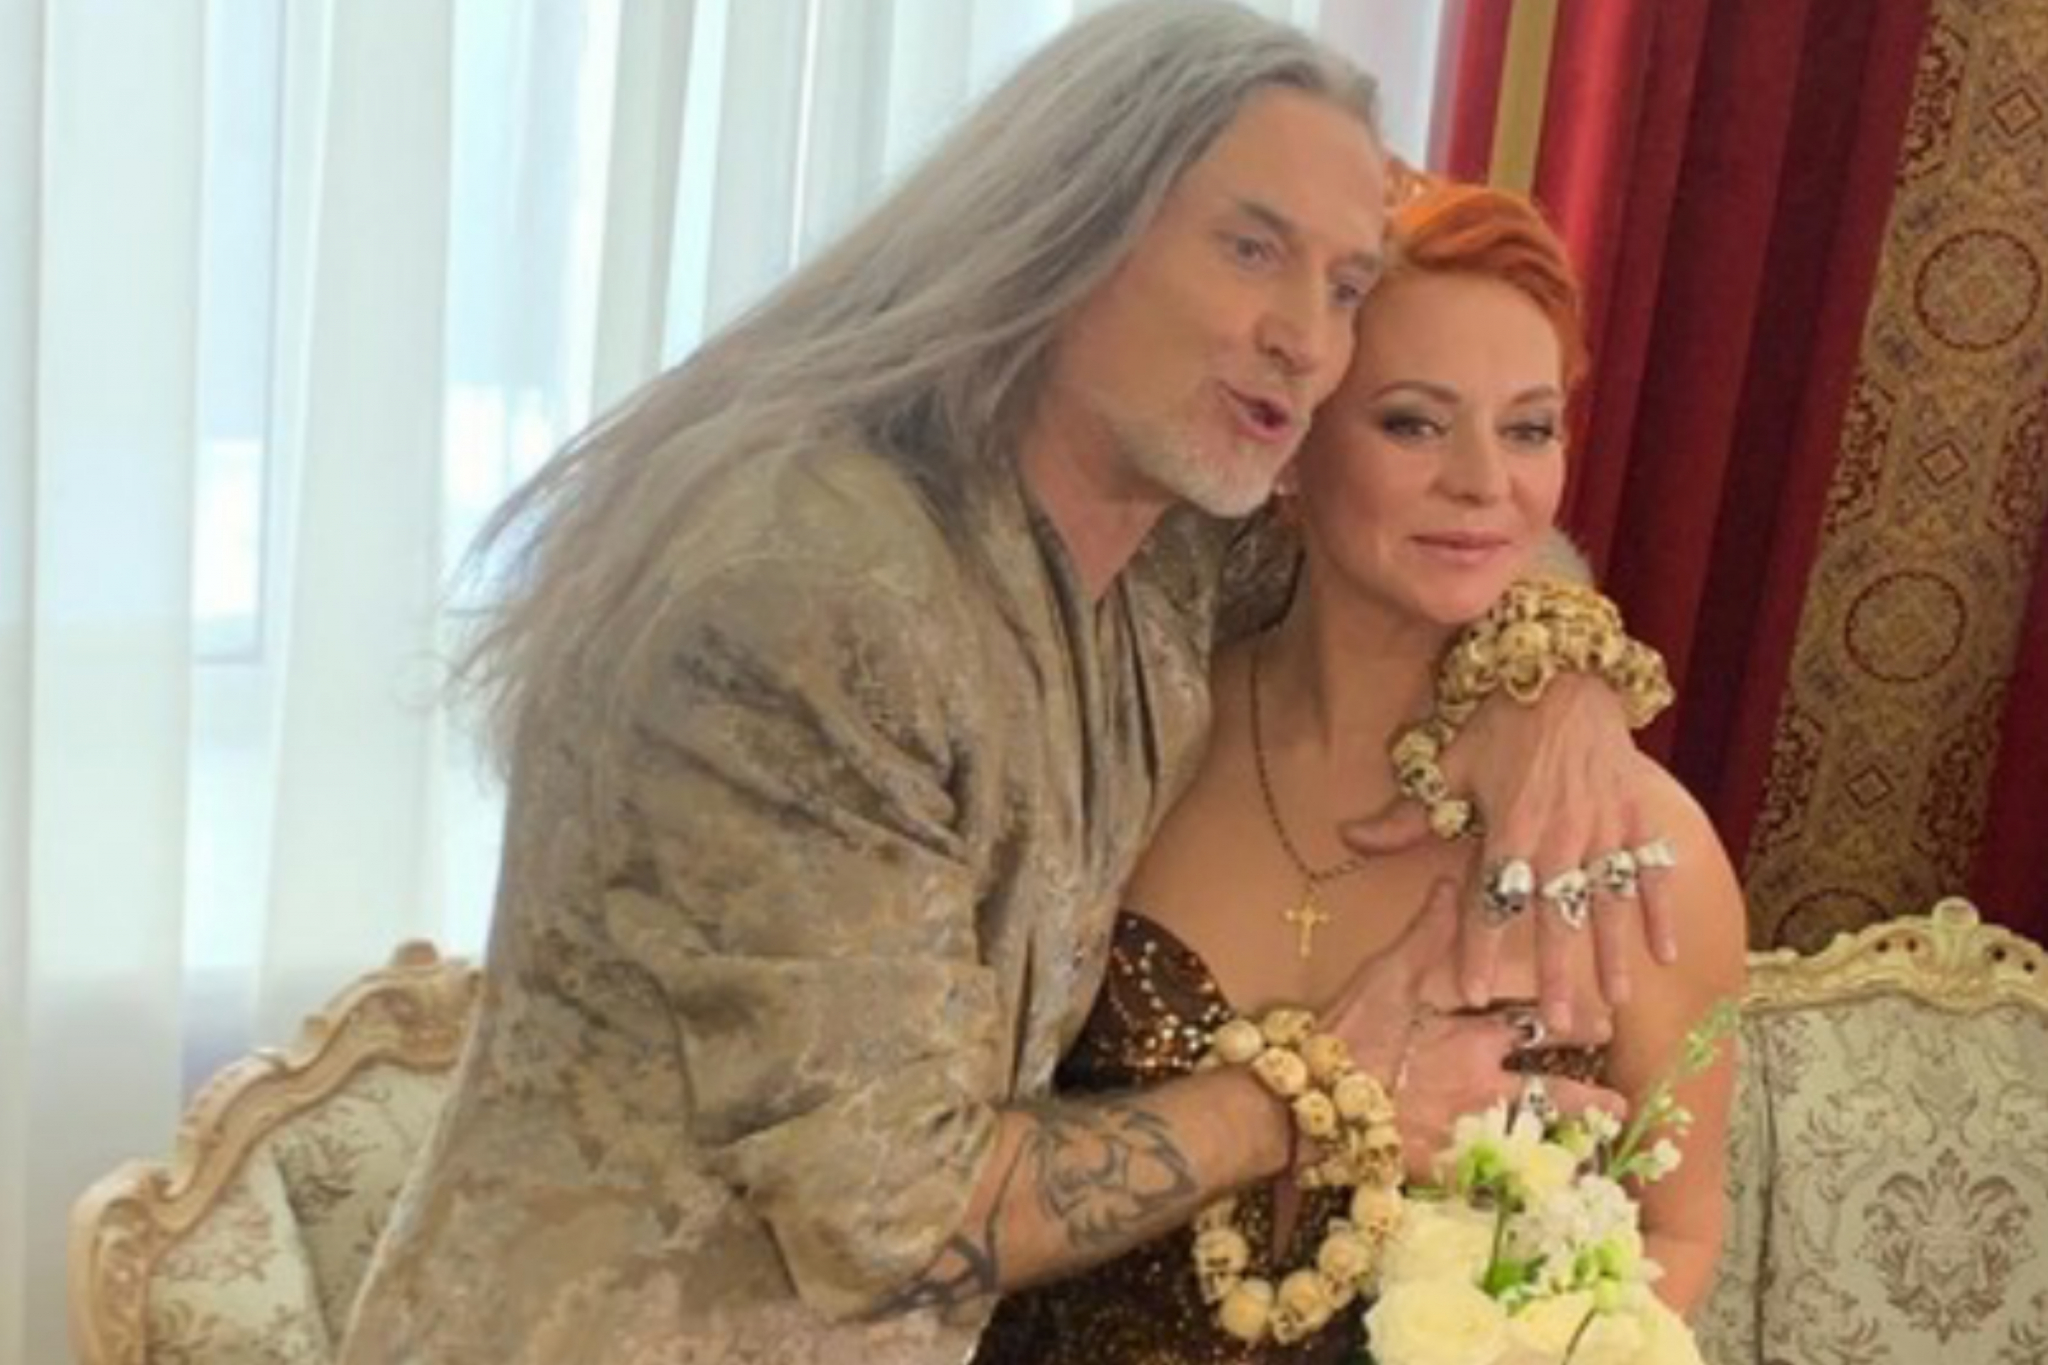 Владимирская визажистка сделала свадебный макияж для невесты Джигурды